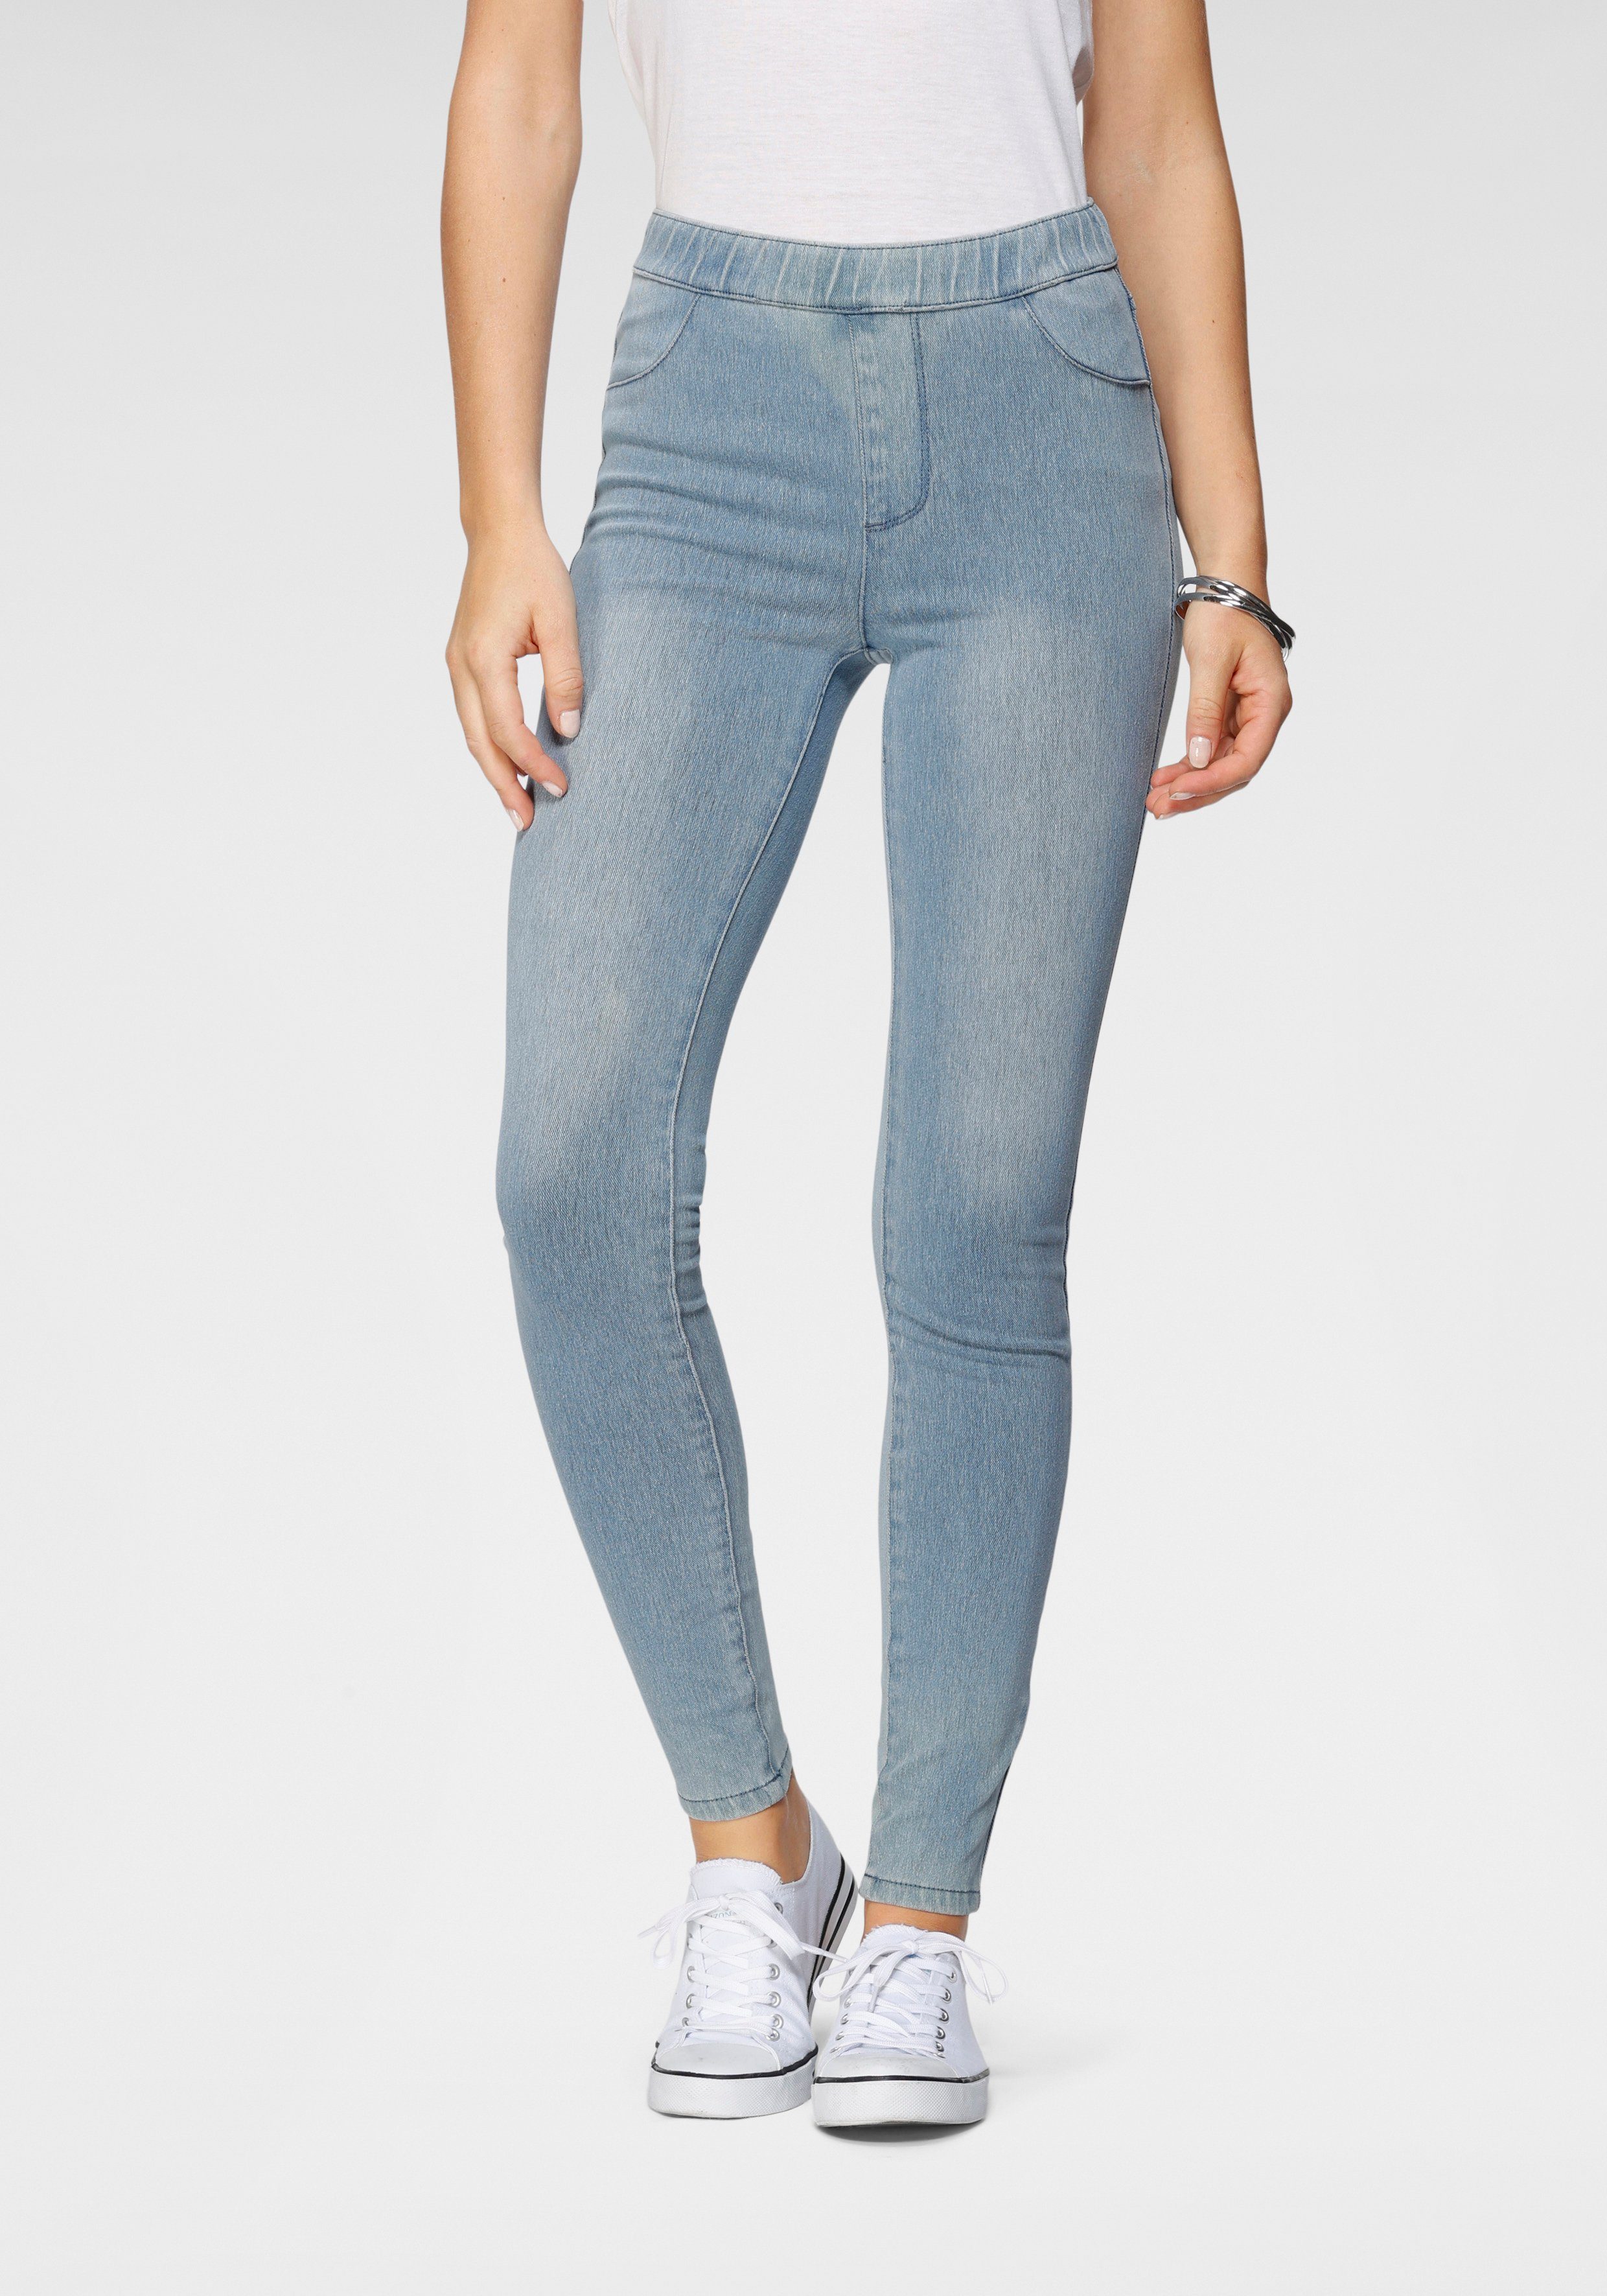 Arizona Jogg Pants High Waist in Denim-Optik, Jeans aus trendigem Jogg-Denim  mit Schlupfbund von Arizona | Skinny Jeans